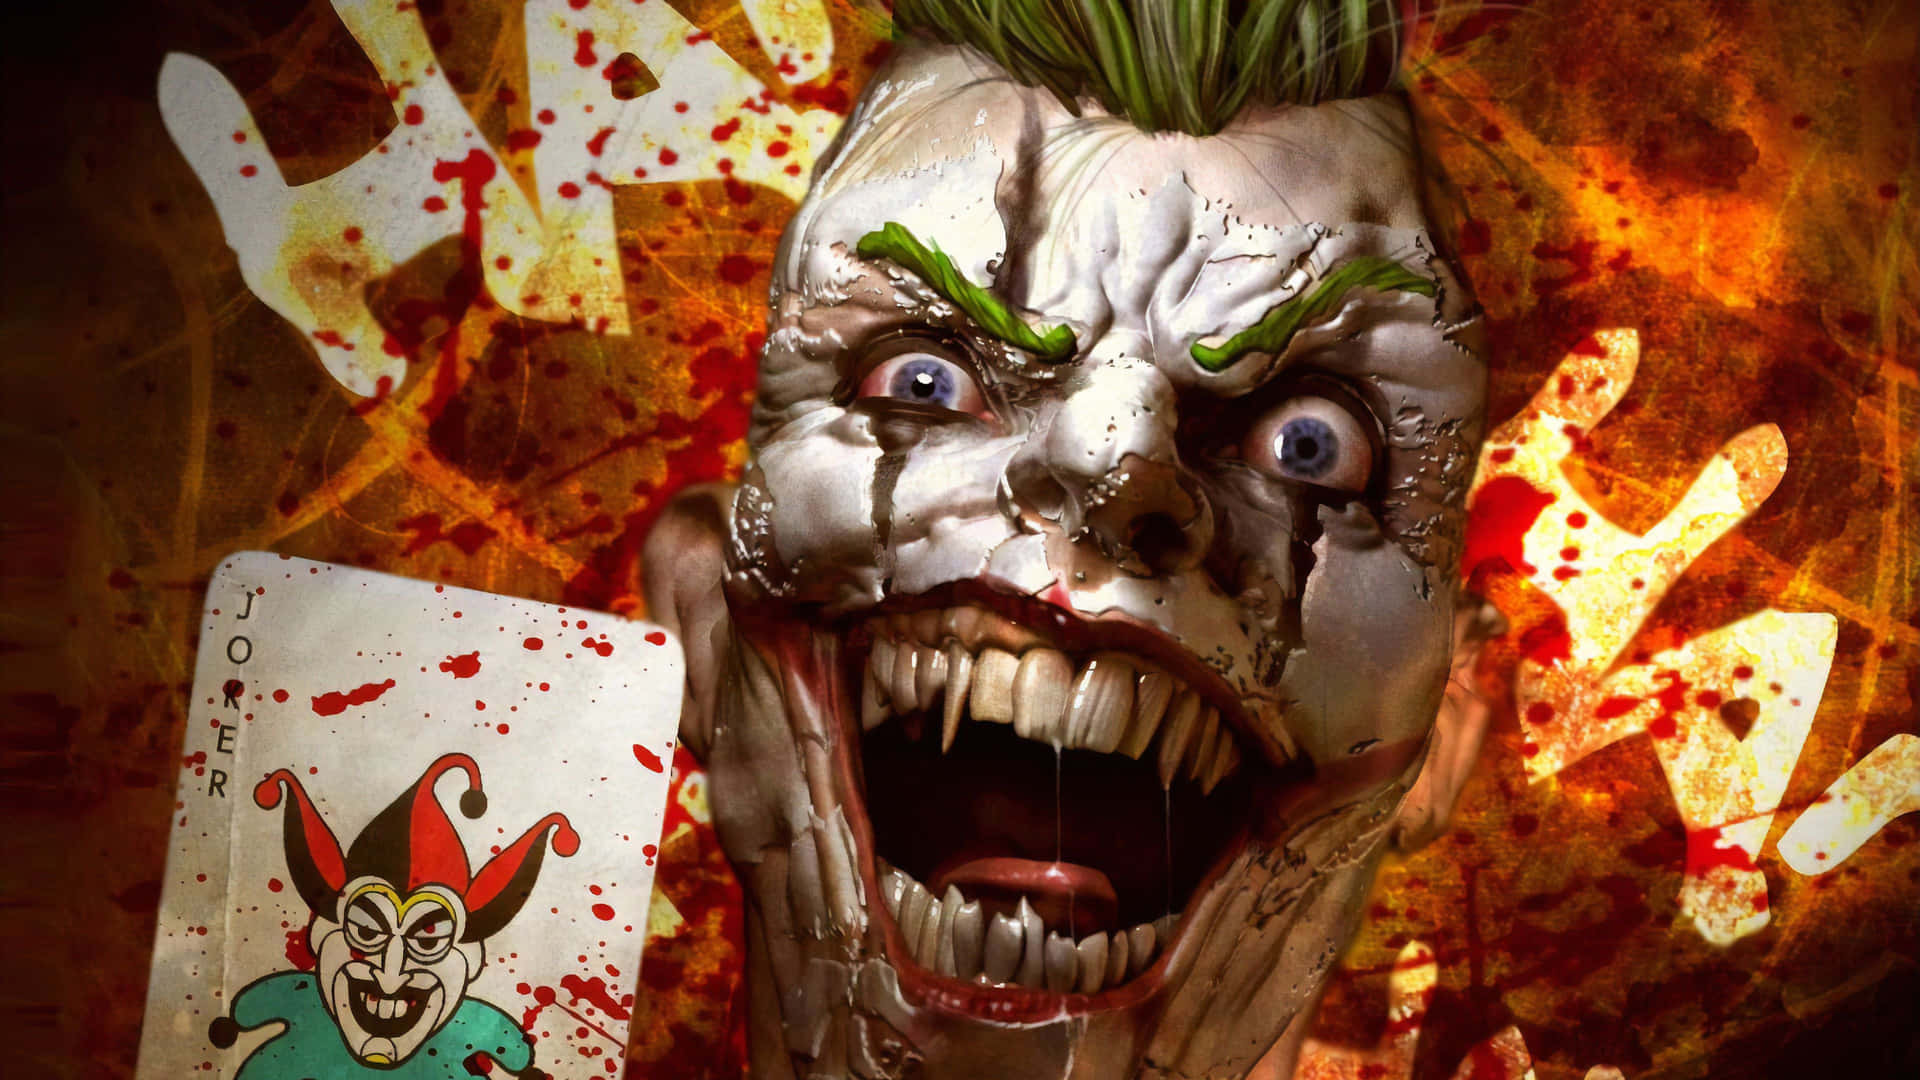 Gory Cool Joker Wallpaper